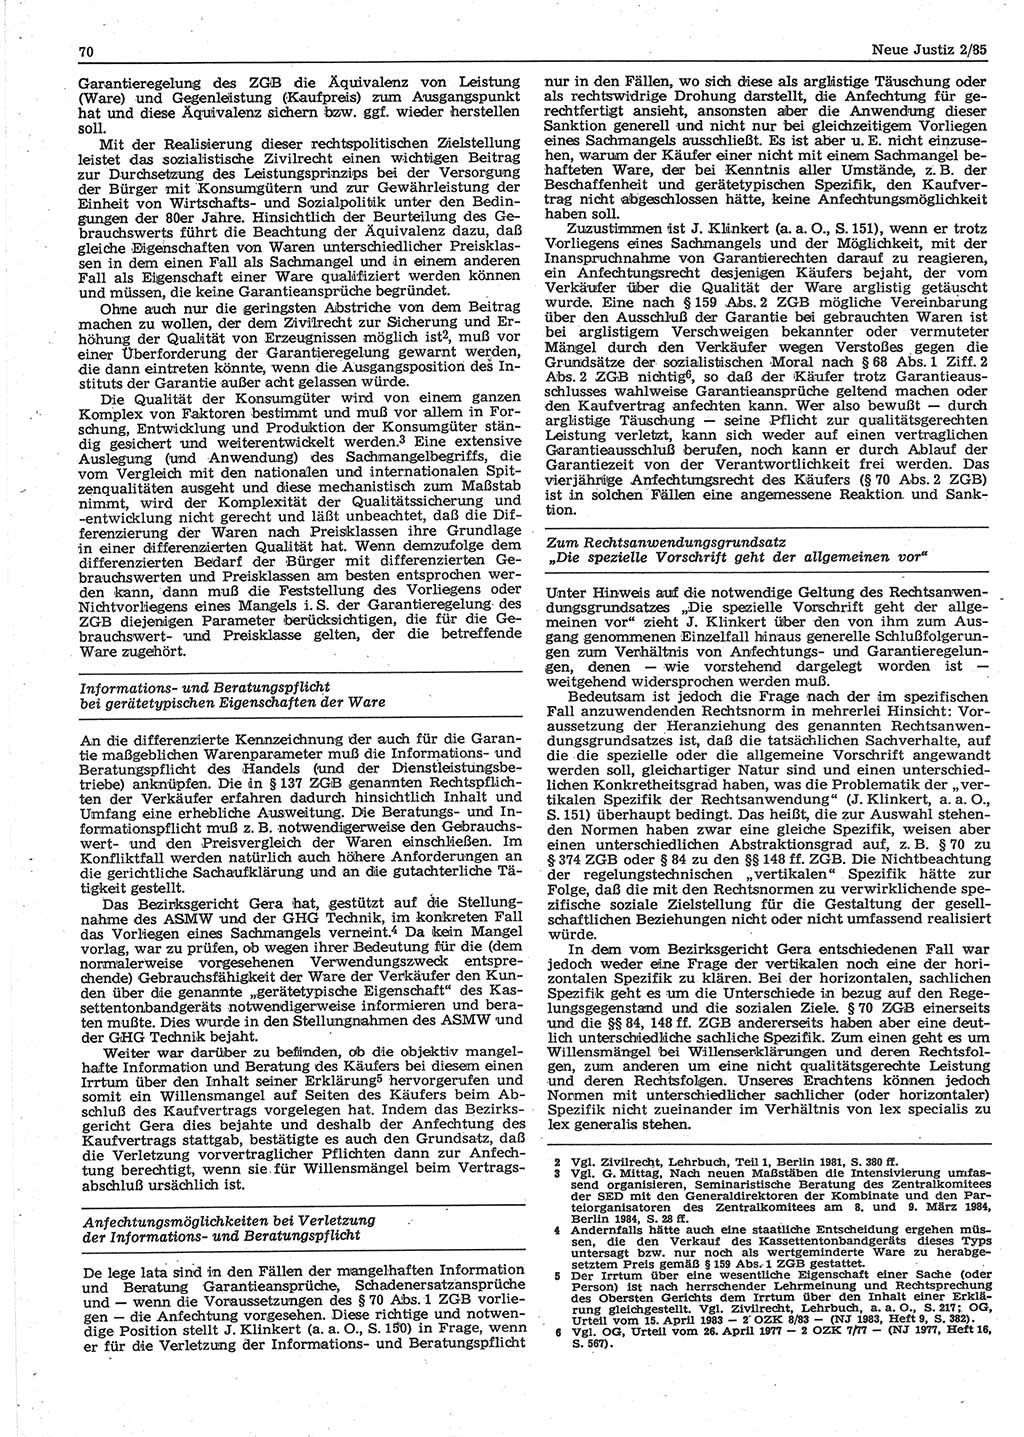 Neue Justiz (NJ), Zeitschrift für sozialistisches Recht und Gesetzlichkeit [Deutsche Demokratische Republik (DDR)], 39. Jahrgang 1985, Seite 70 (NJ DDR 1985, S. 70)